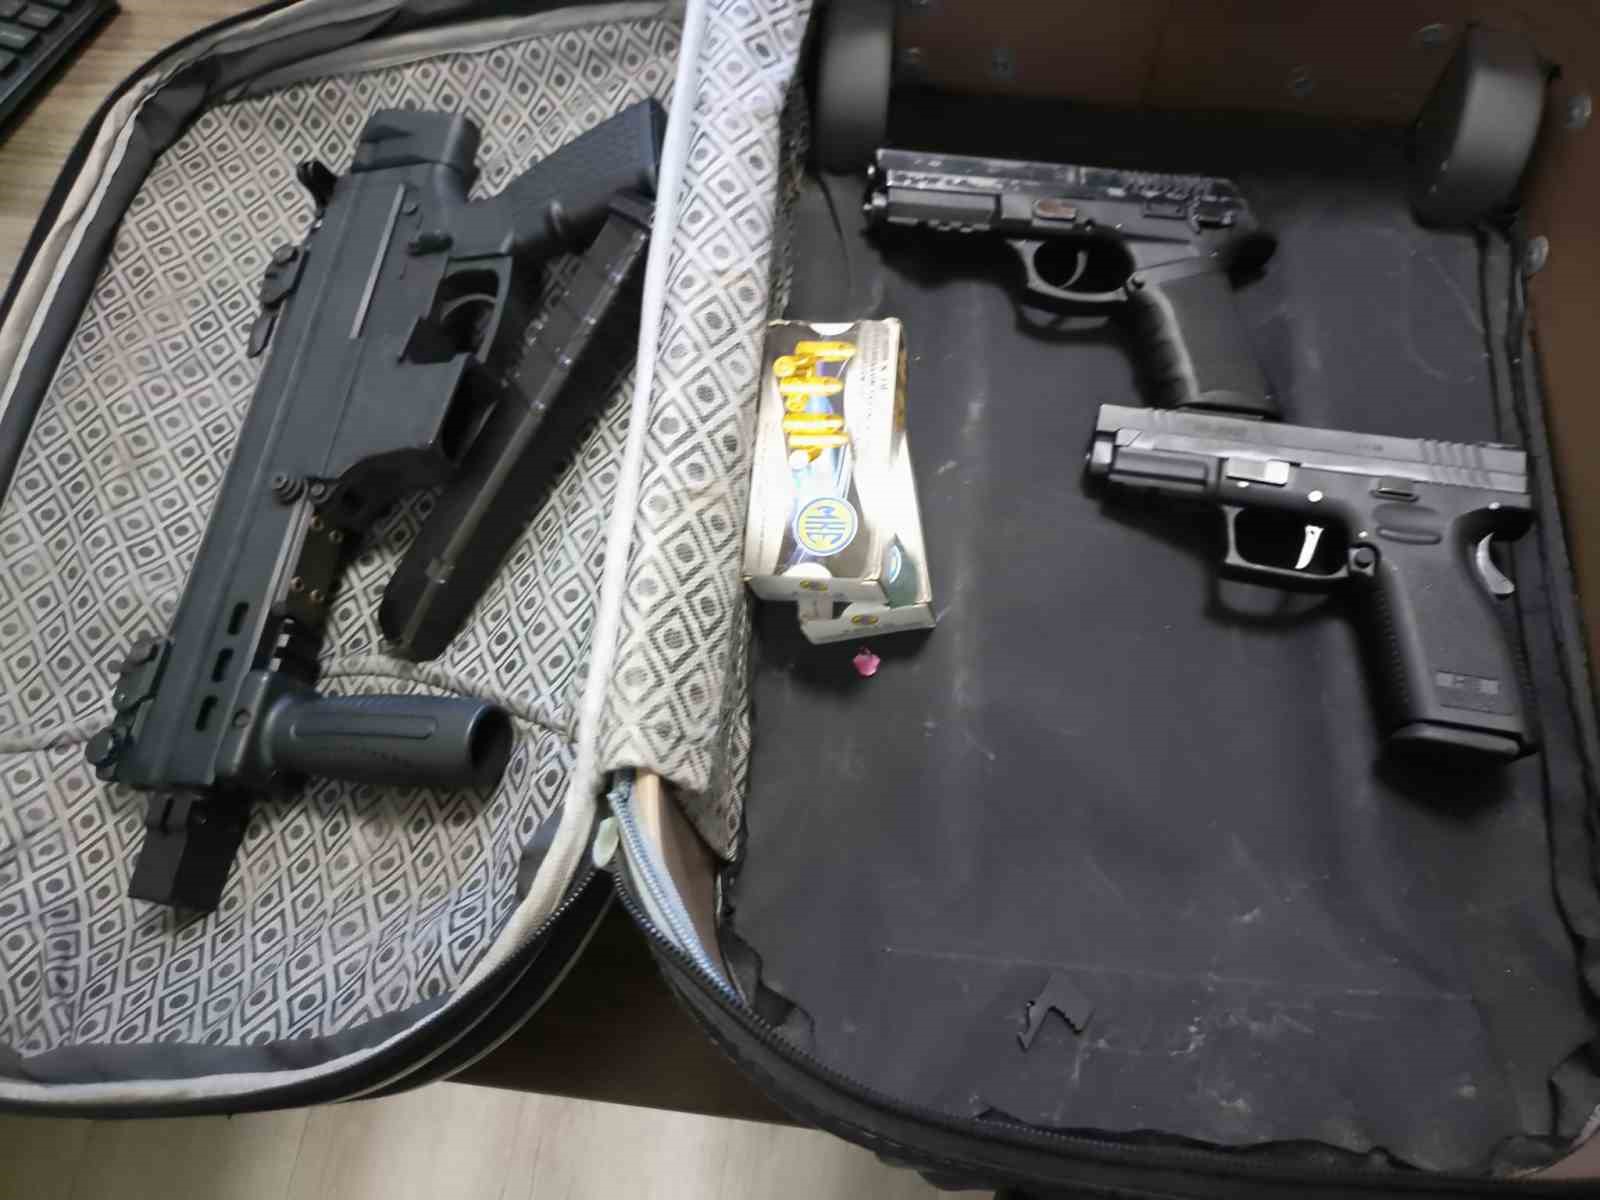 Kütahya’da otomatik silah, 2 tabanca ve çelik yelekler ele geçirilen 2 zanlı tutuklandı
